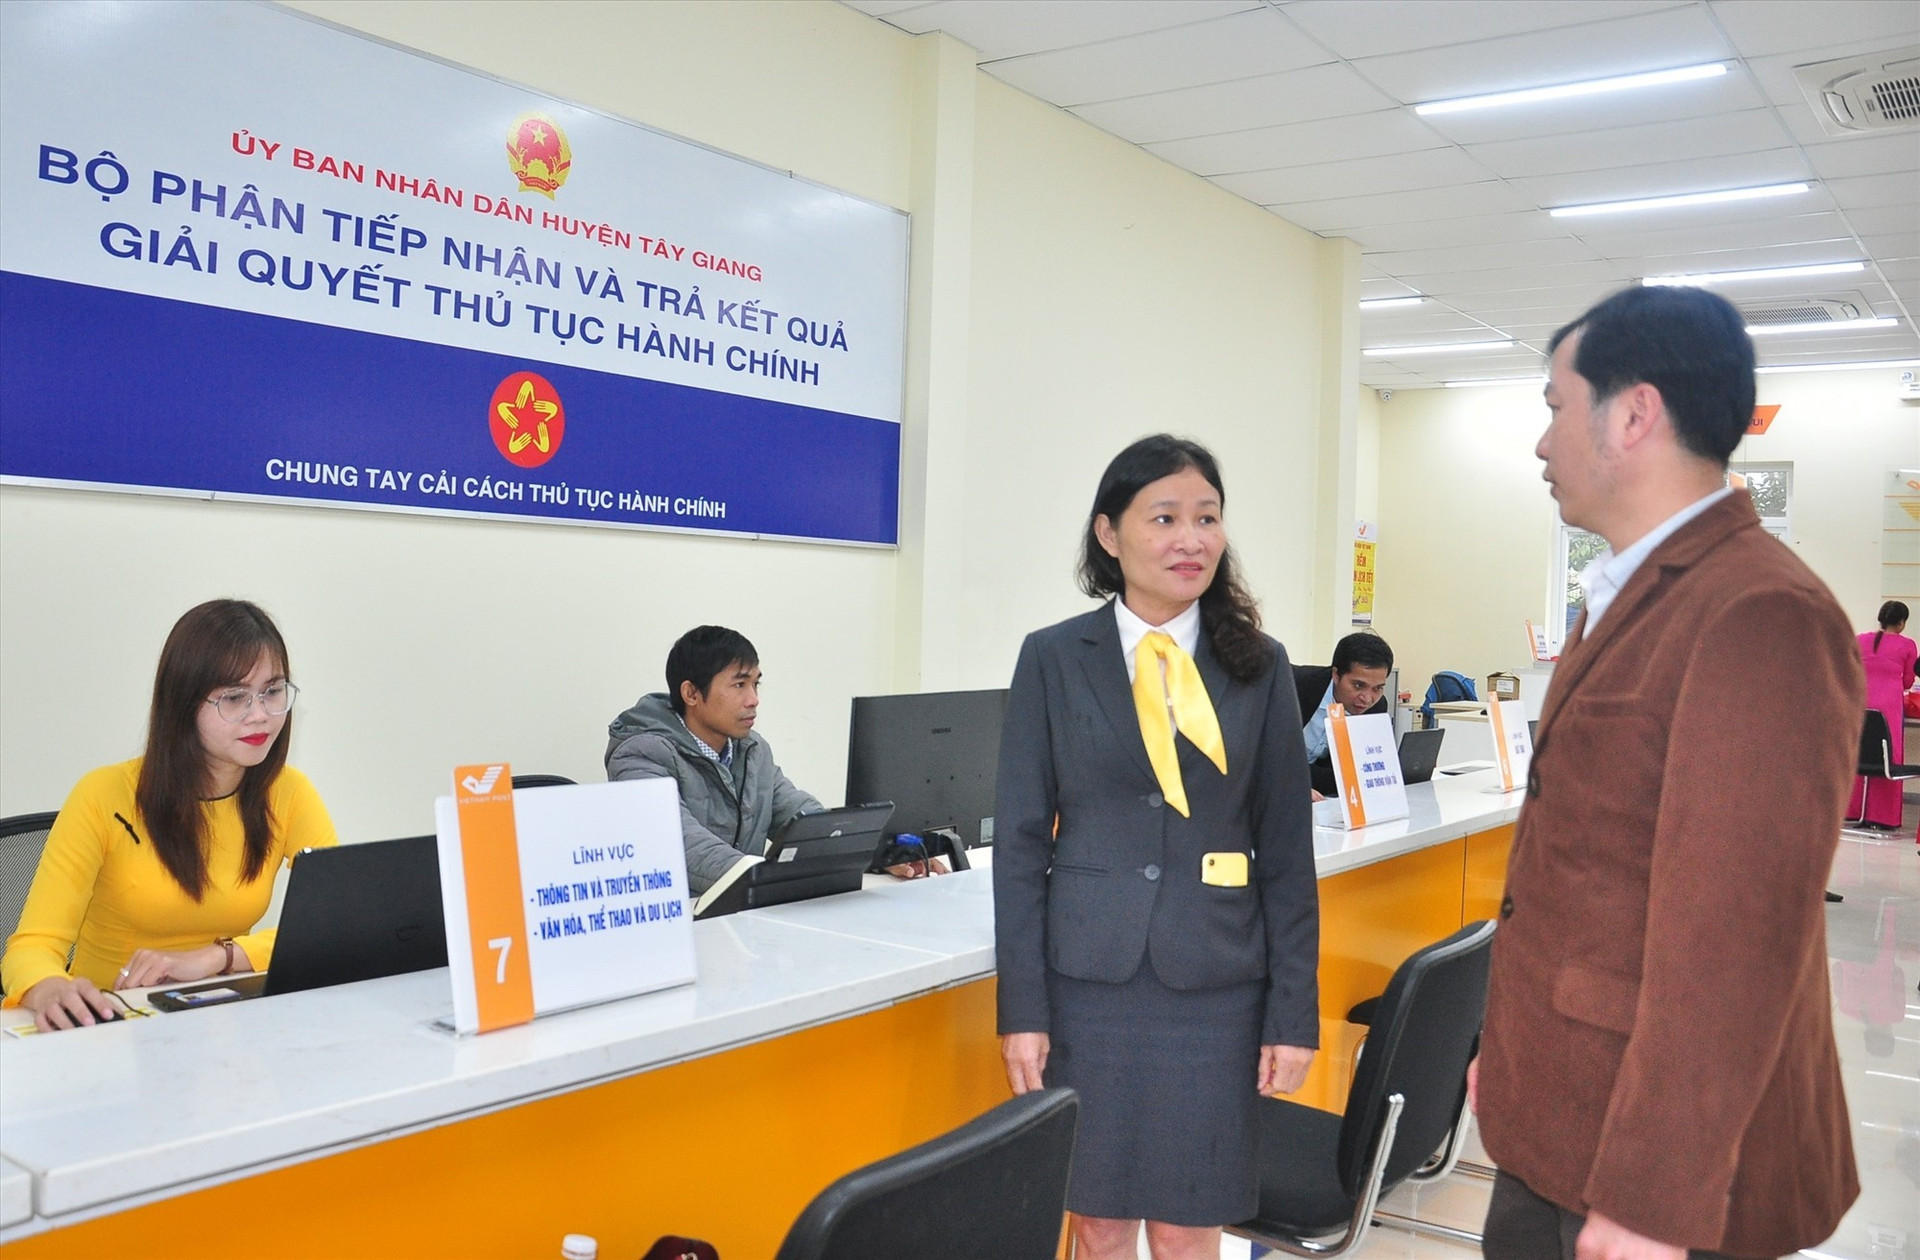 Đến nay, huyện Tây Giang là đơn vị duy nhất thực hiện chuyển trụ sở bộ phận một cửa sang bưu điện. Ảnh: V.A